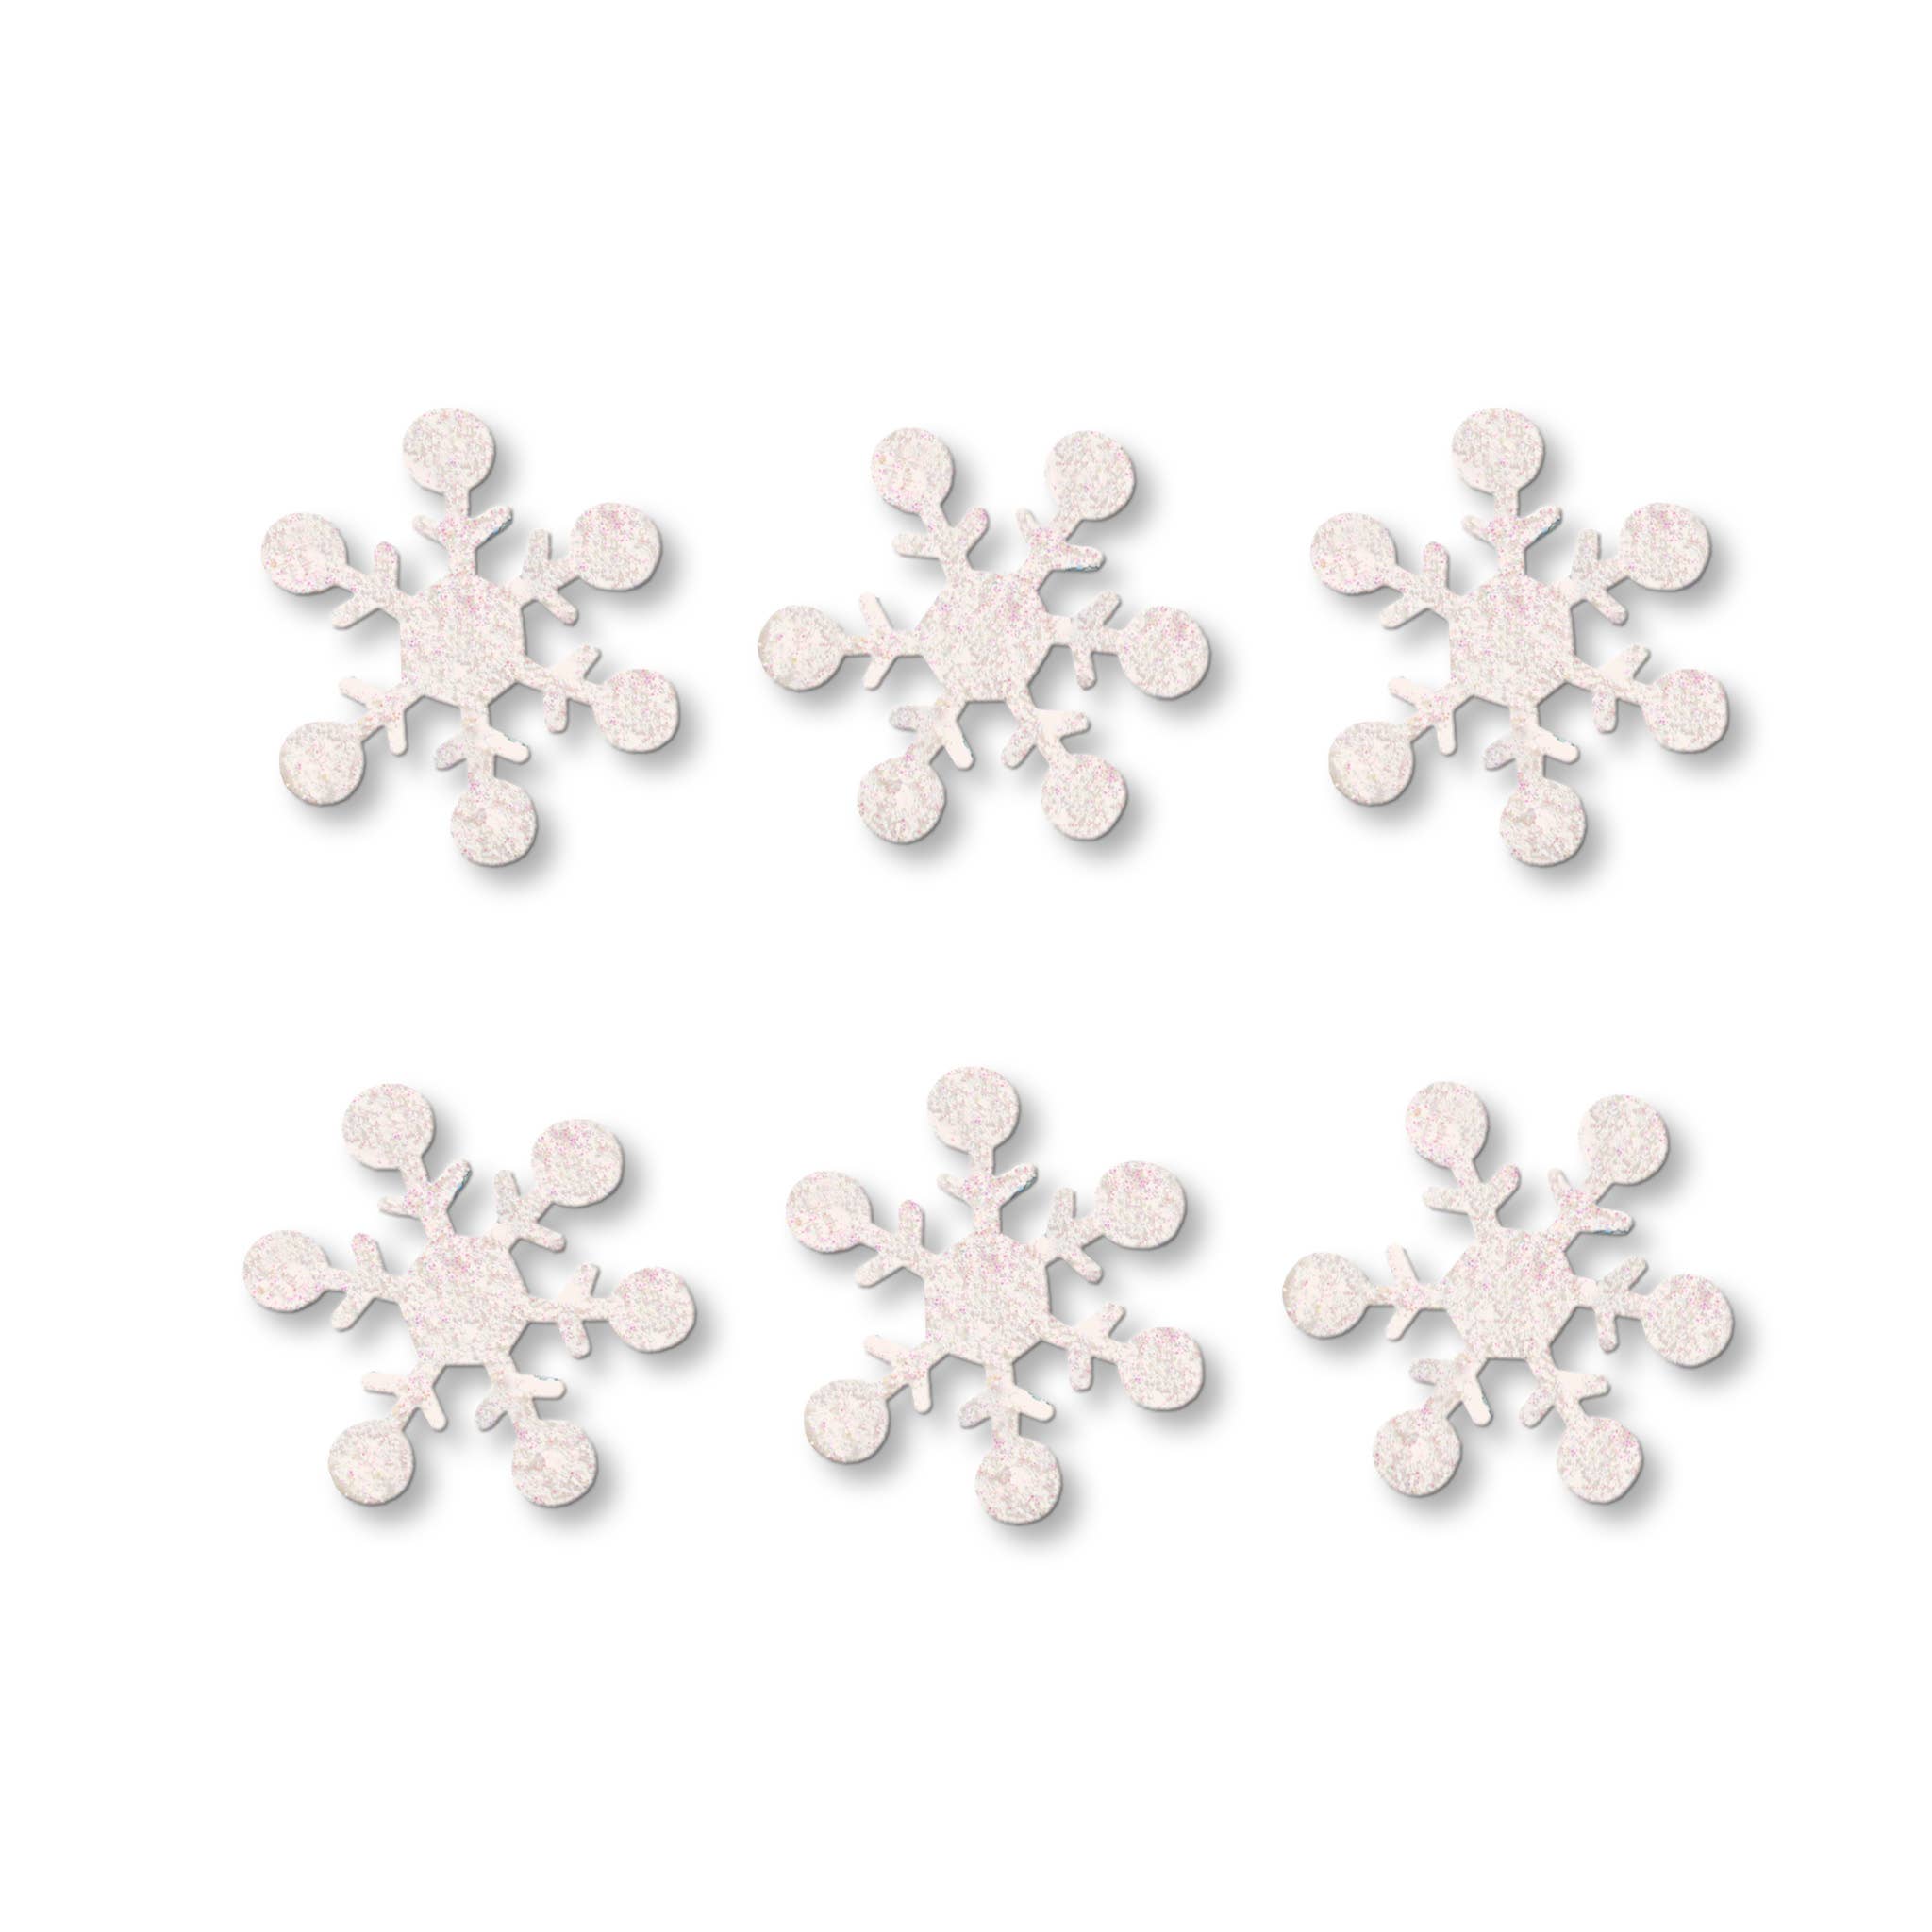 Snowflake Magnets S/6 White Glitter